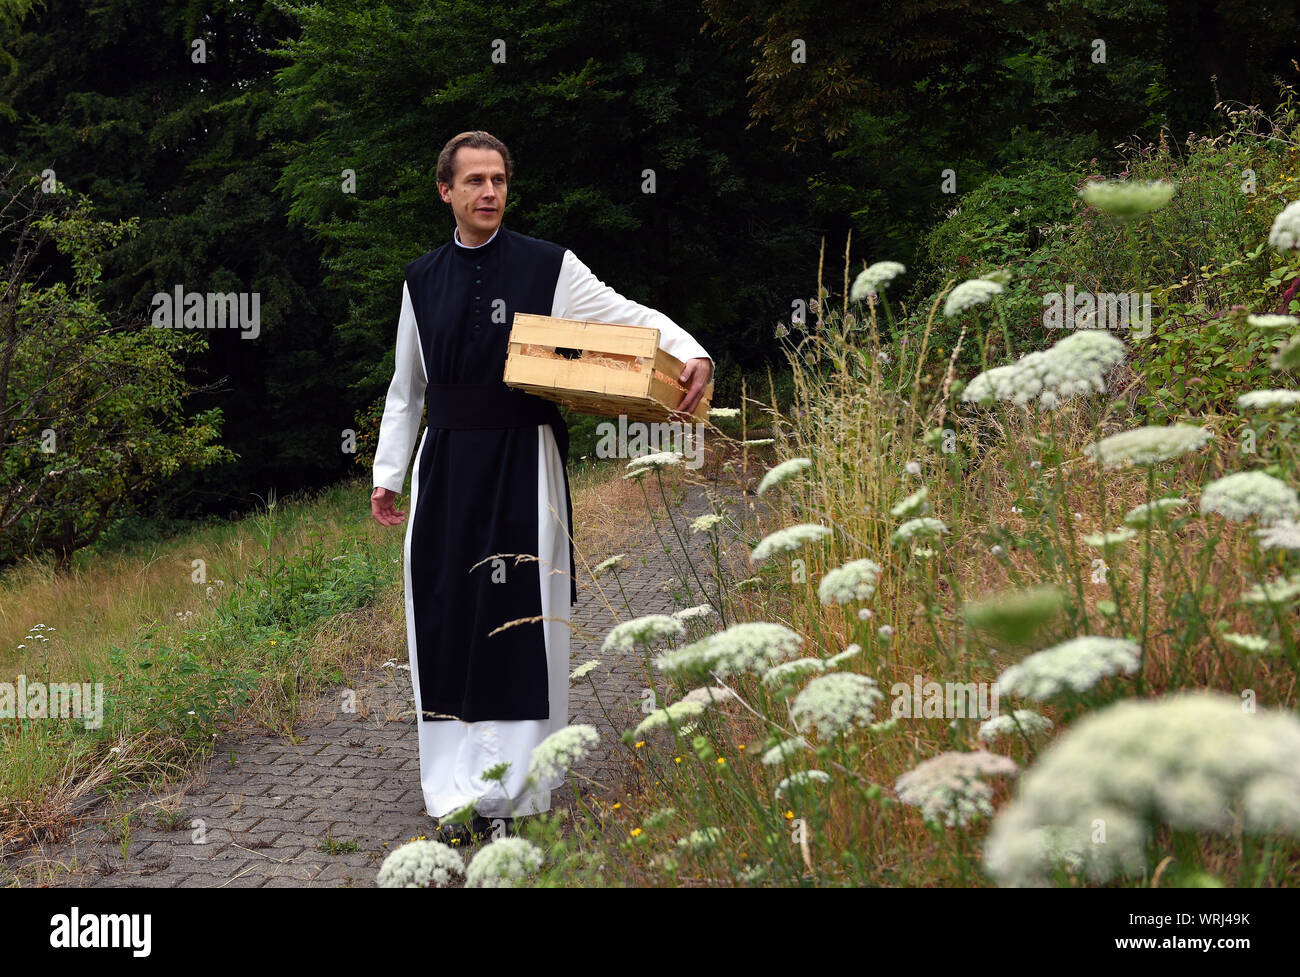 15 juillet 2019, Bochum, Rhénanie du Nord-Westphalie : Père Justinus promenades dans le jardin du monastère cistercien dans le district de Stiepel. Dans sa propre production, il produit un haut pourcentage de gin et l'appelle "onatic Dry Gin'. Les herbes qu'il a besoin sont plantées et récoltées dans le jardin du monastère. Il obtient le genévrier de Toscane et le grain d'où l'alcool est obtenu qu'il obtient de l'abbaye de Heiligenkreuz mère dans la forêt viennoise. Dans le monastère lui-même il n'est pas autorisé à brûler de gin, parce qu'il n'a pas de droits de distillation. Pour ce qu'il conduit à un producteur nearb Banque D'Images